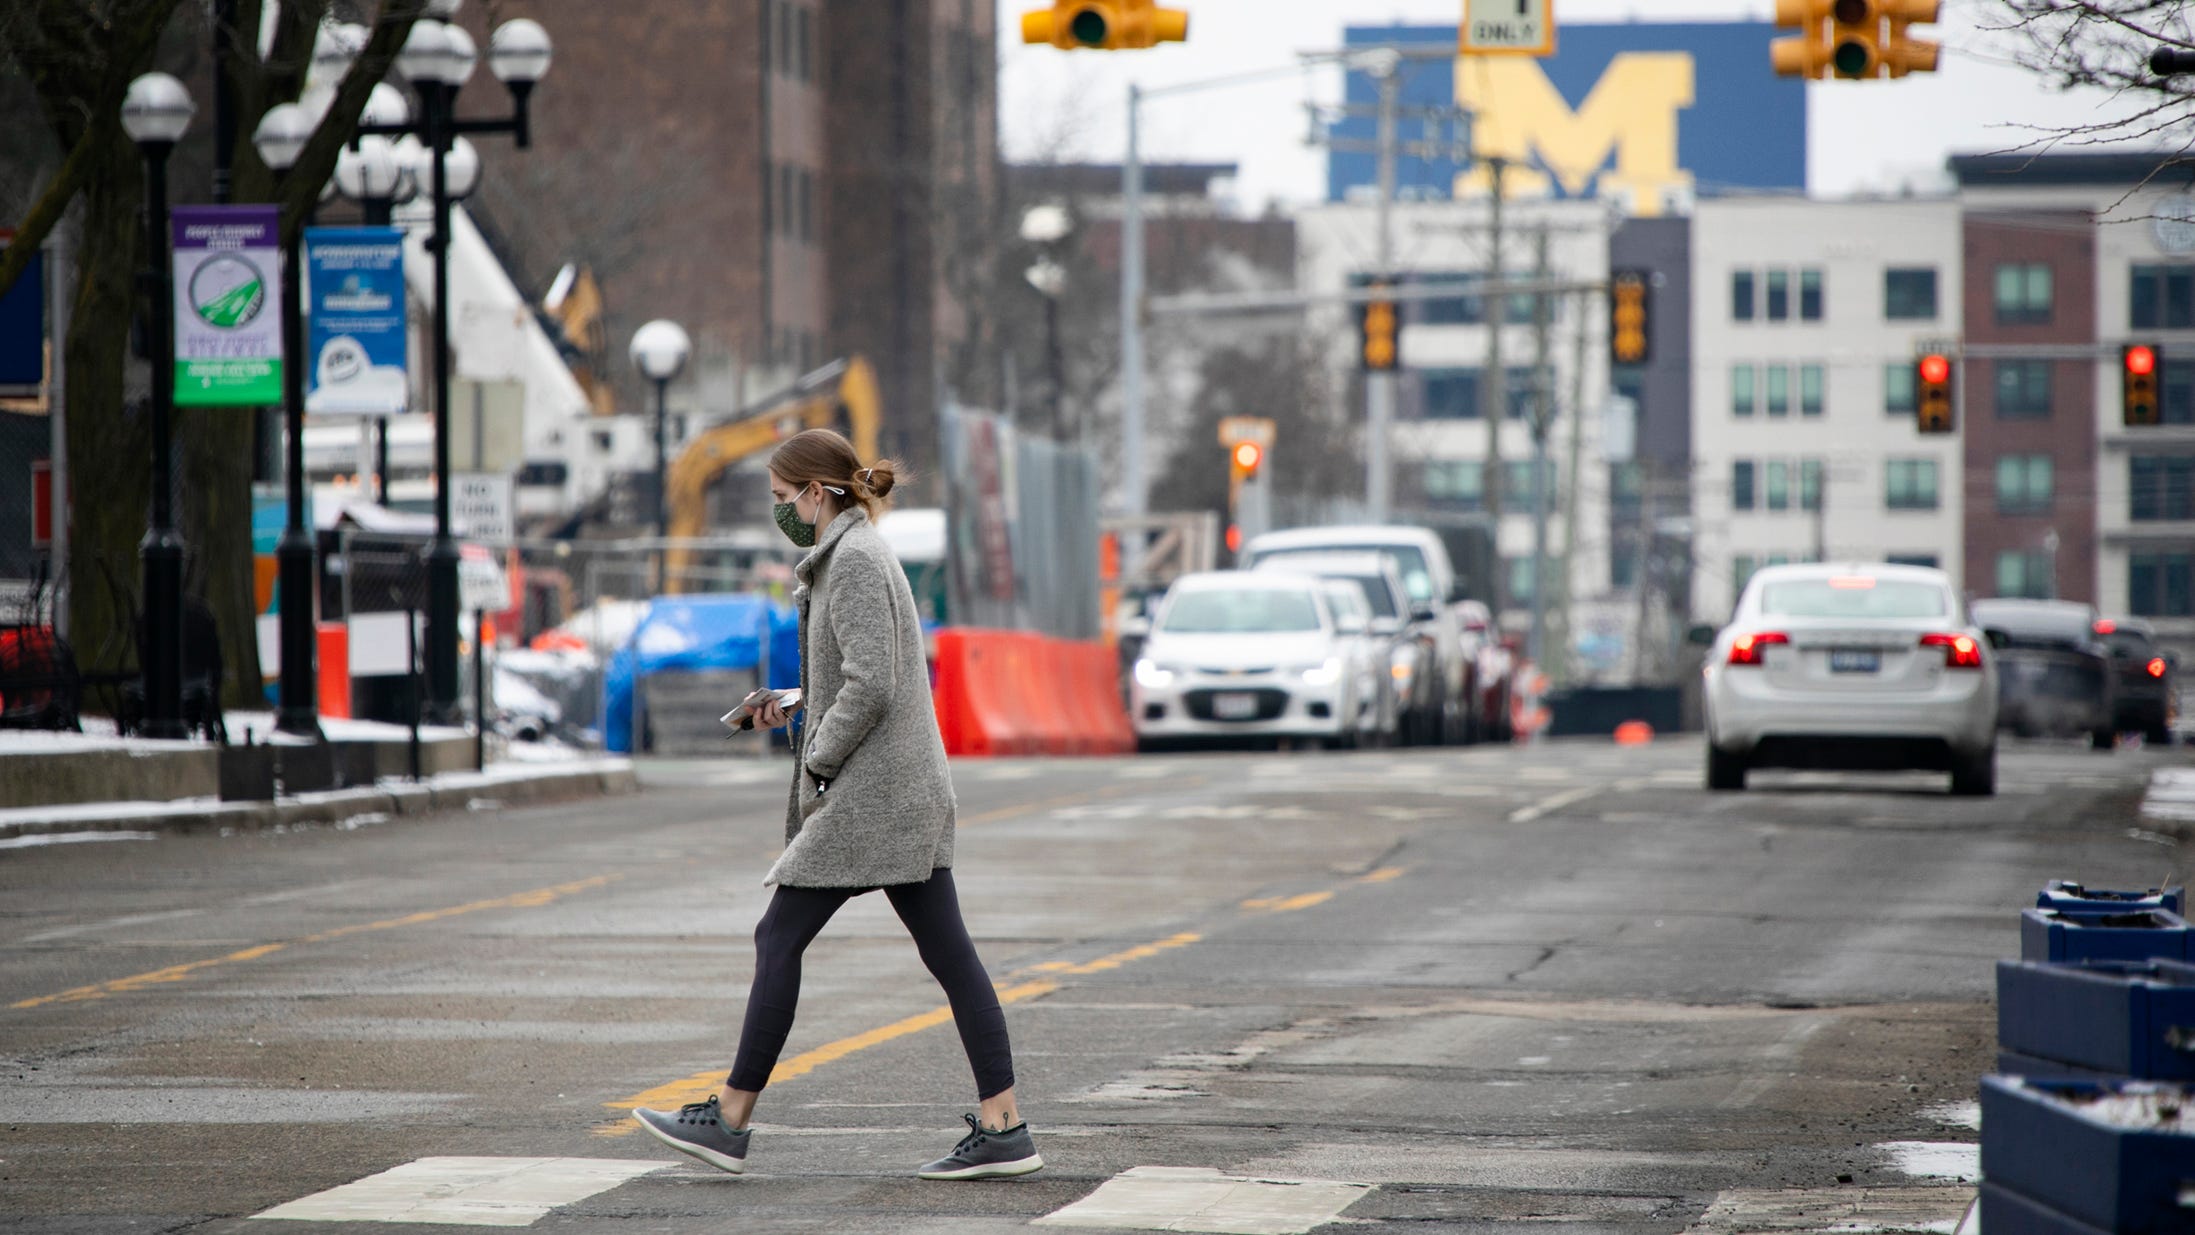 Pedestrian deaths in 2020 hit gruesome milestone